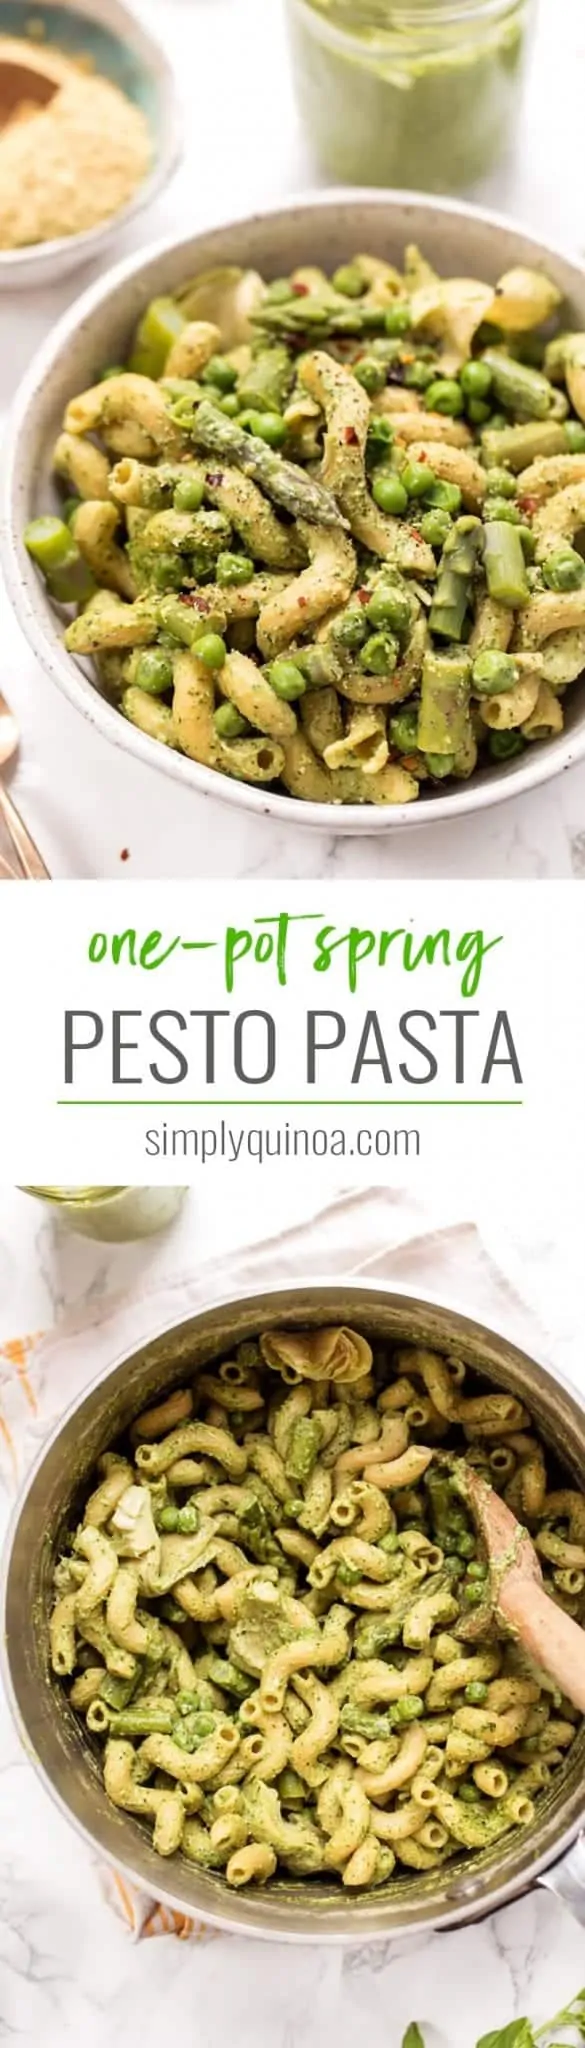 healthy spring pesto pasta with homemade vegan pesto